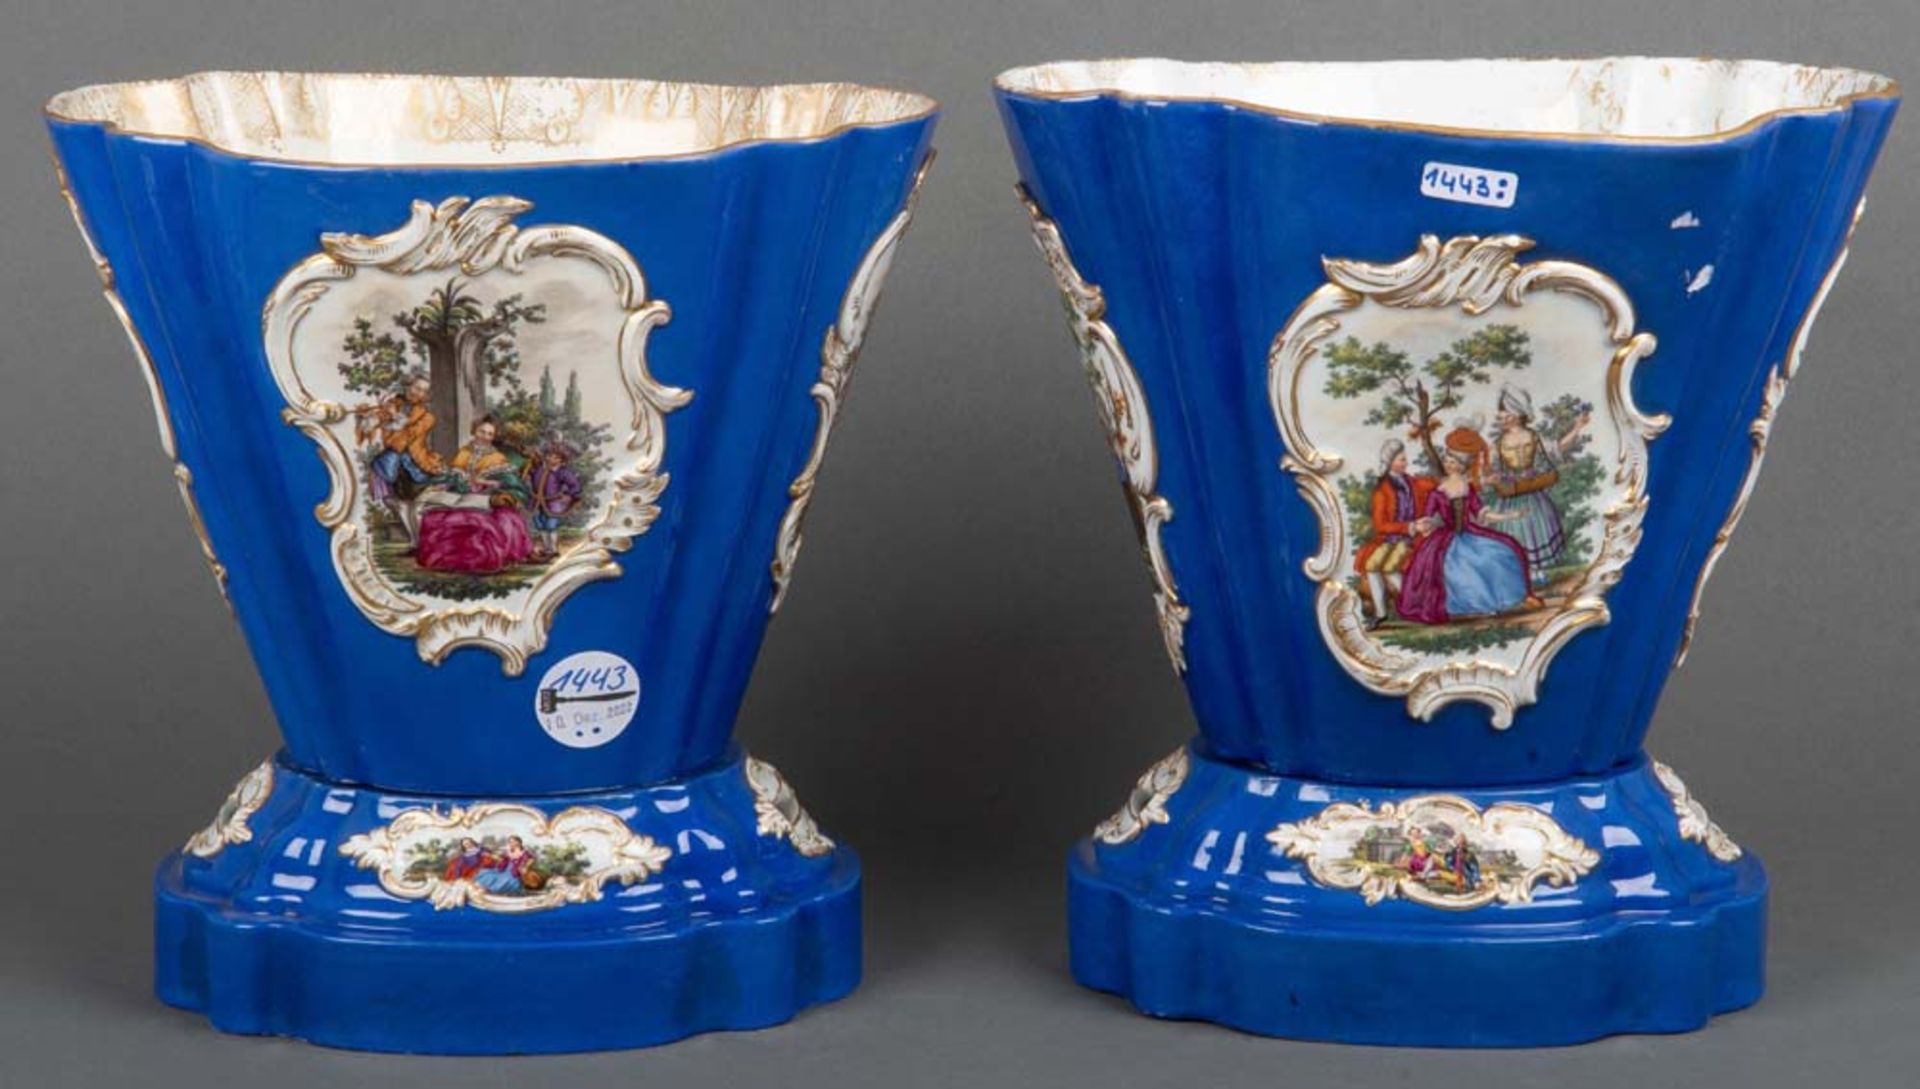 Paar Prunkvasen. Meissen 19. Jh. Porzellan, beide Teile mit blauem Fond, bunt gemalten Watteauszenen